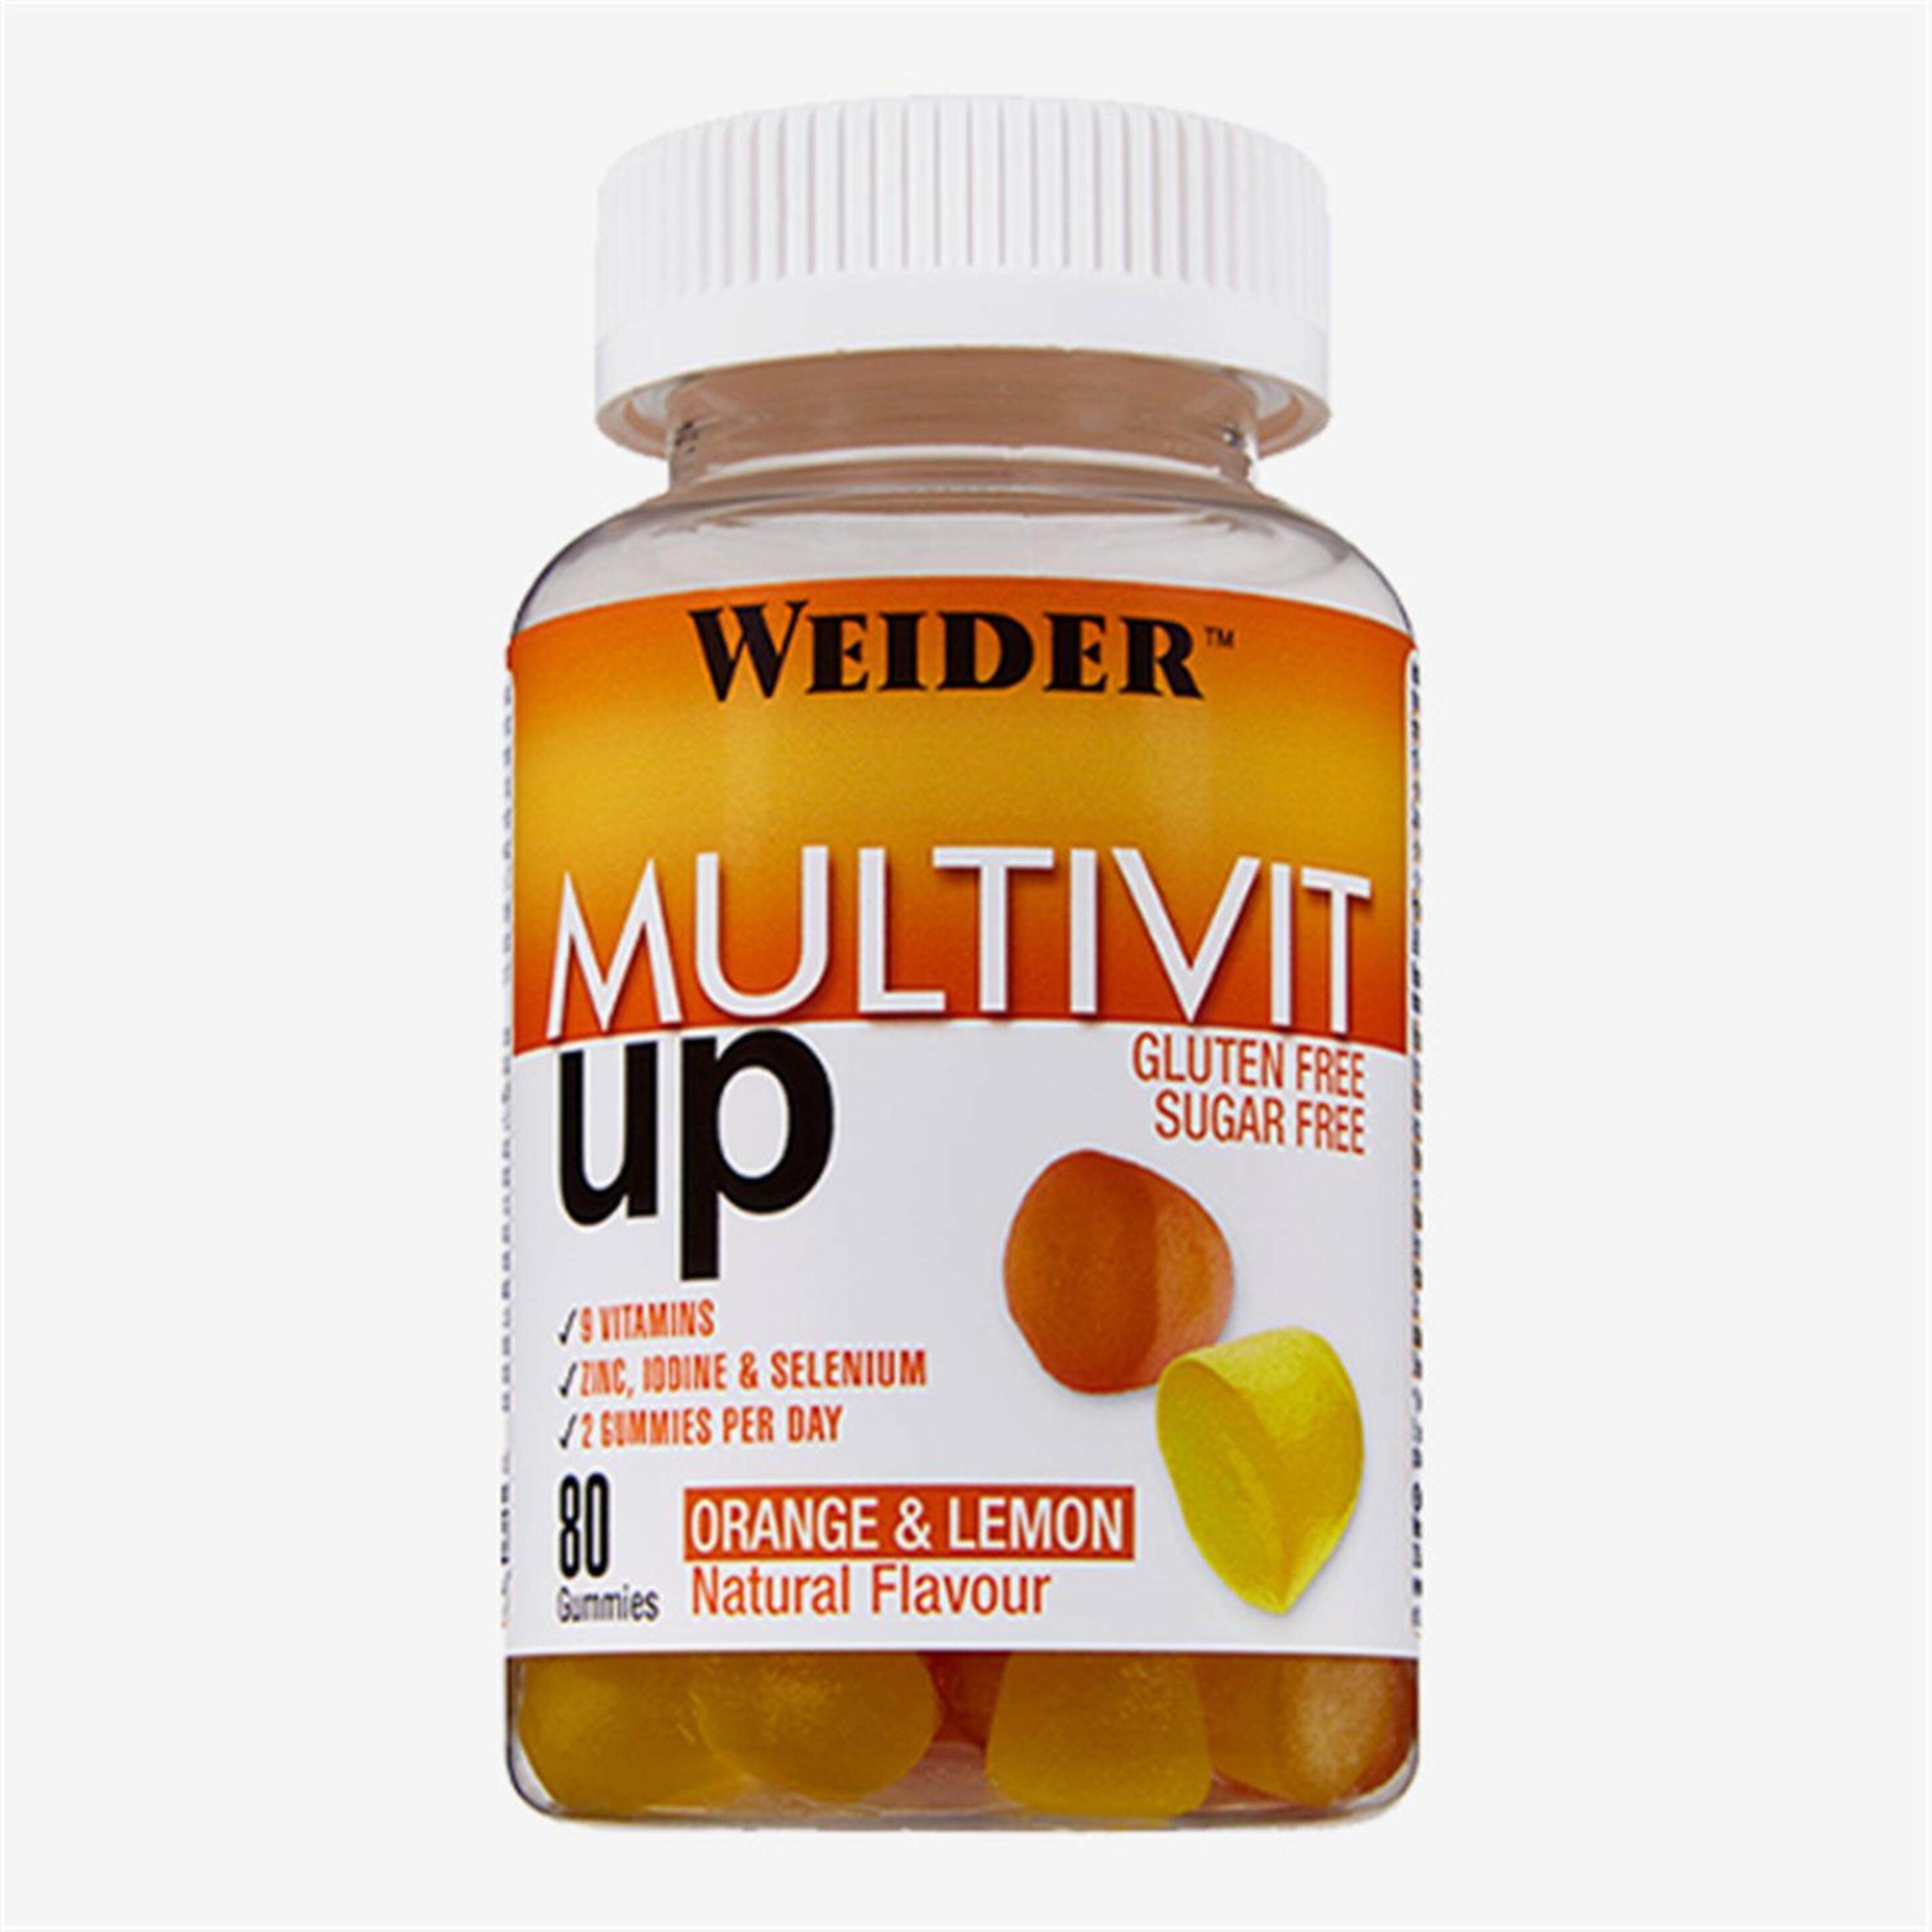 Weider Multivitaminas - unico - Gominolas Vitamina 200g